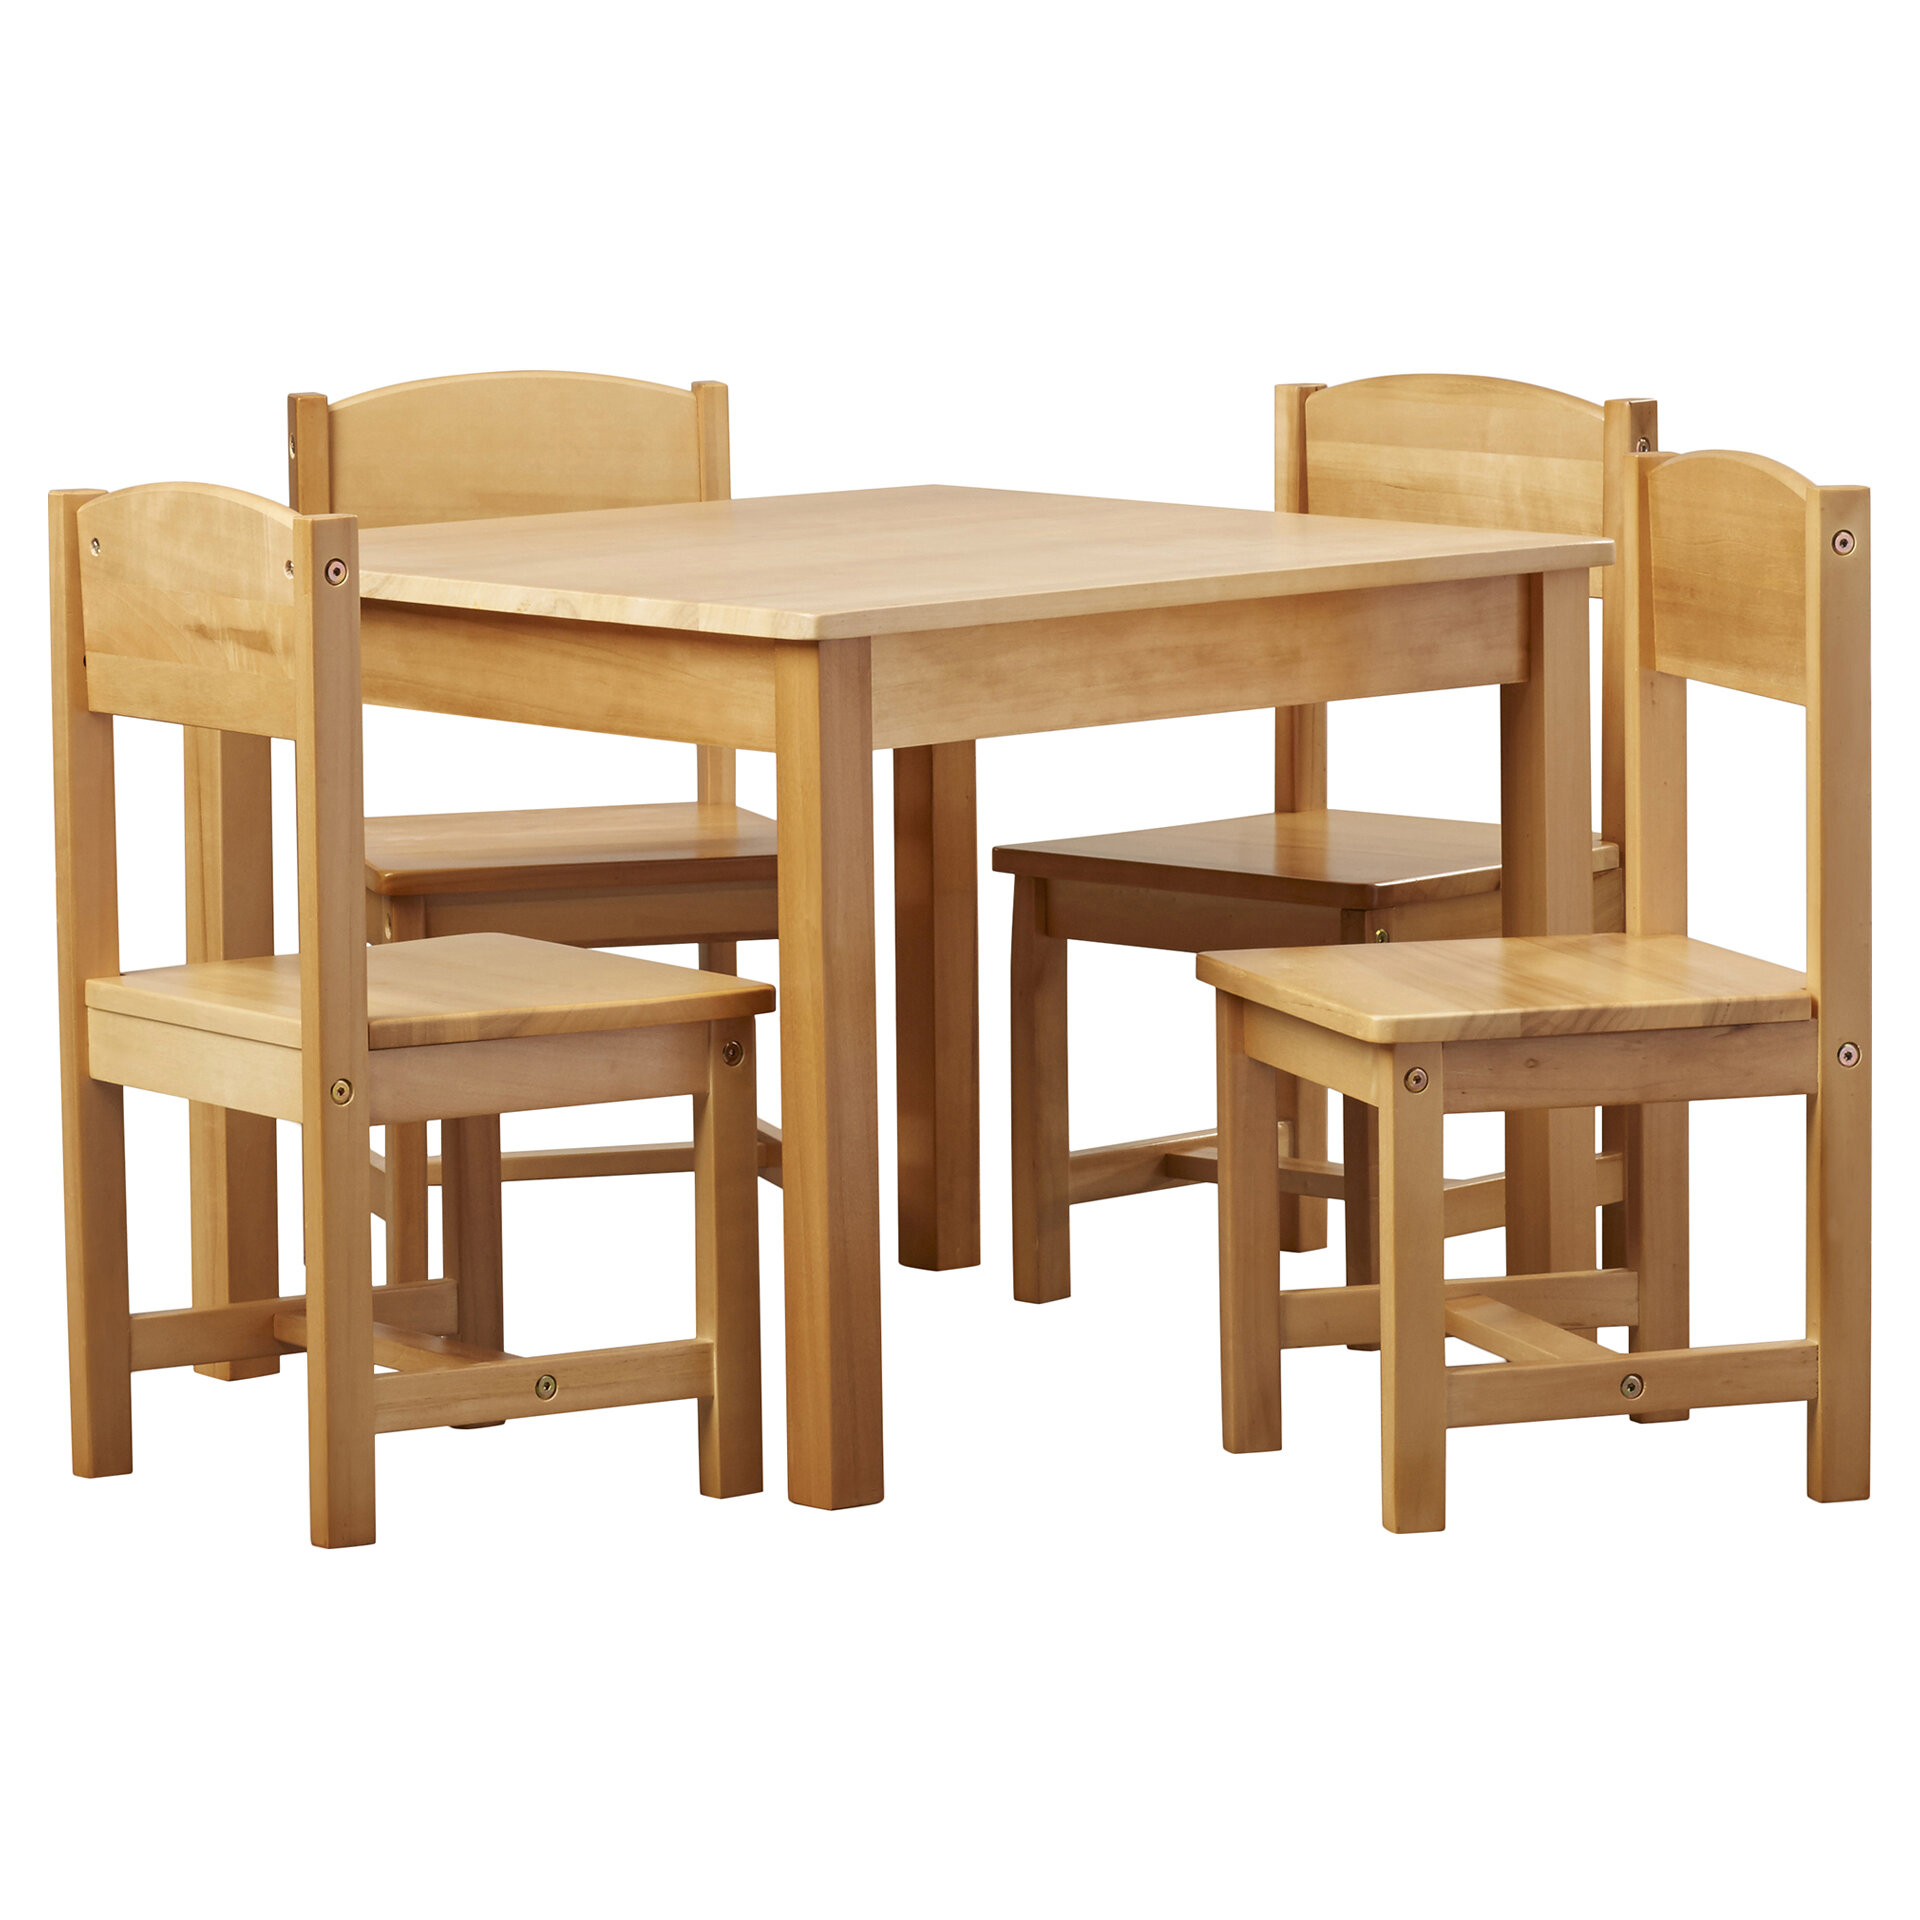 kidkraft farmhouse table and chair set white